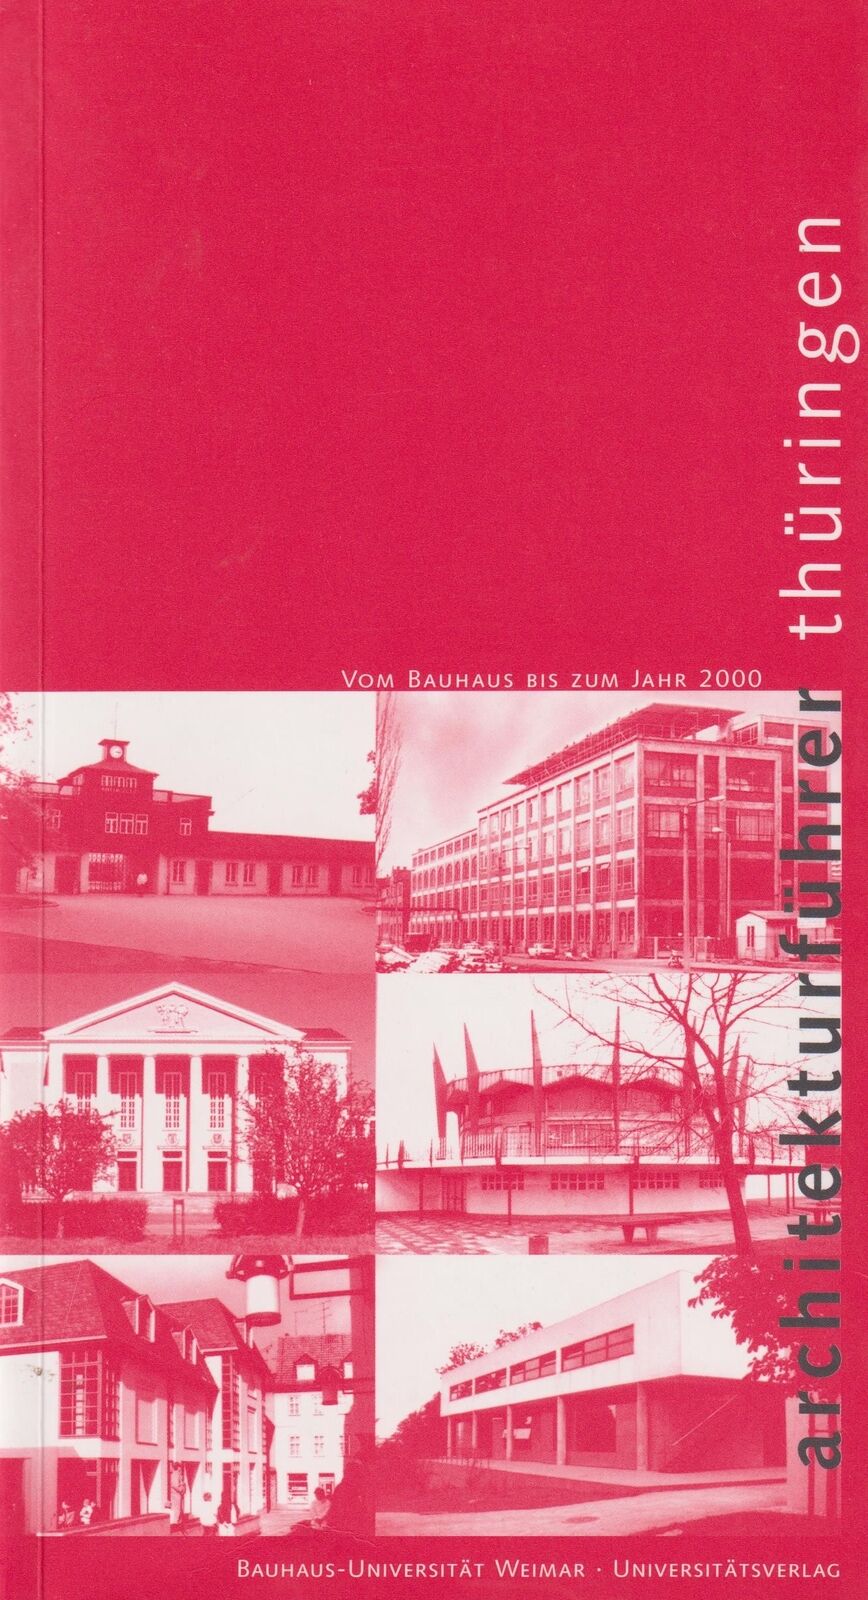 Buch: Architekturführer Thüringen, Wieler, Ulrich, 2001, Universitätsverlag - Wieler, Ulrich, Gernot Weckherlin  und Mark Escherich